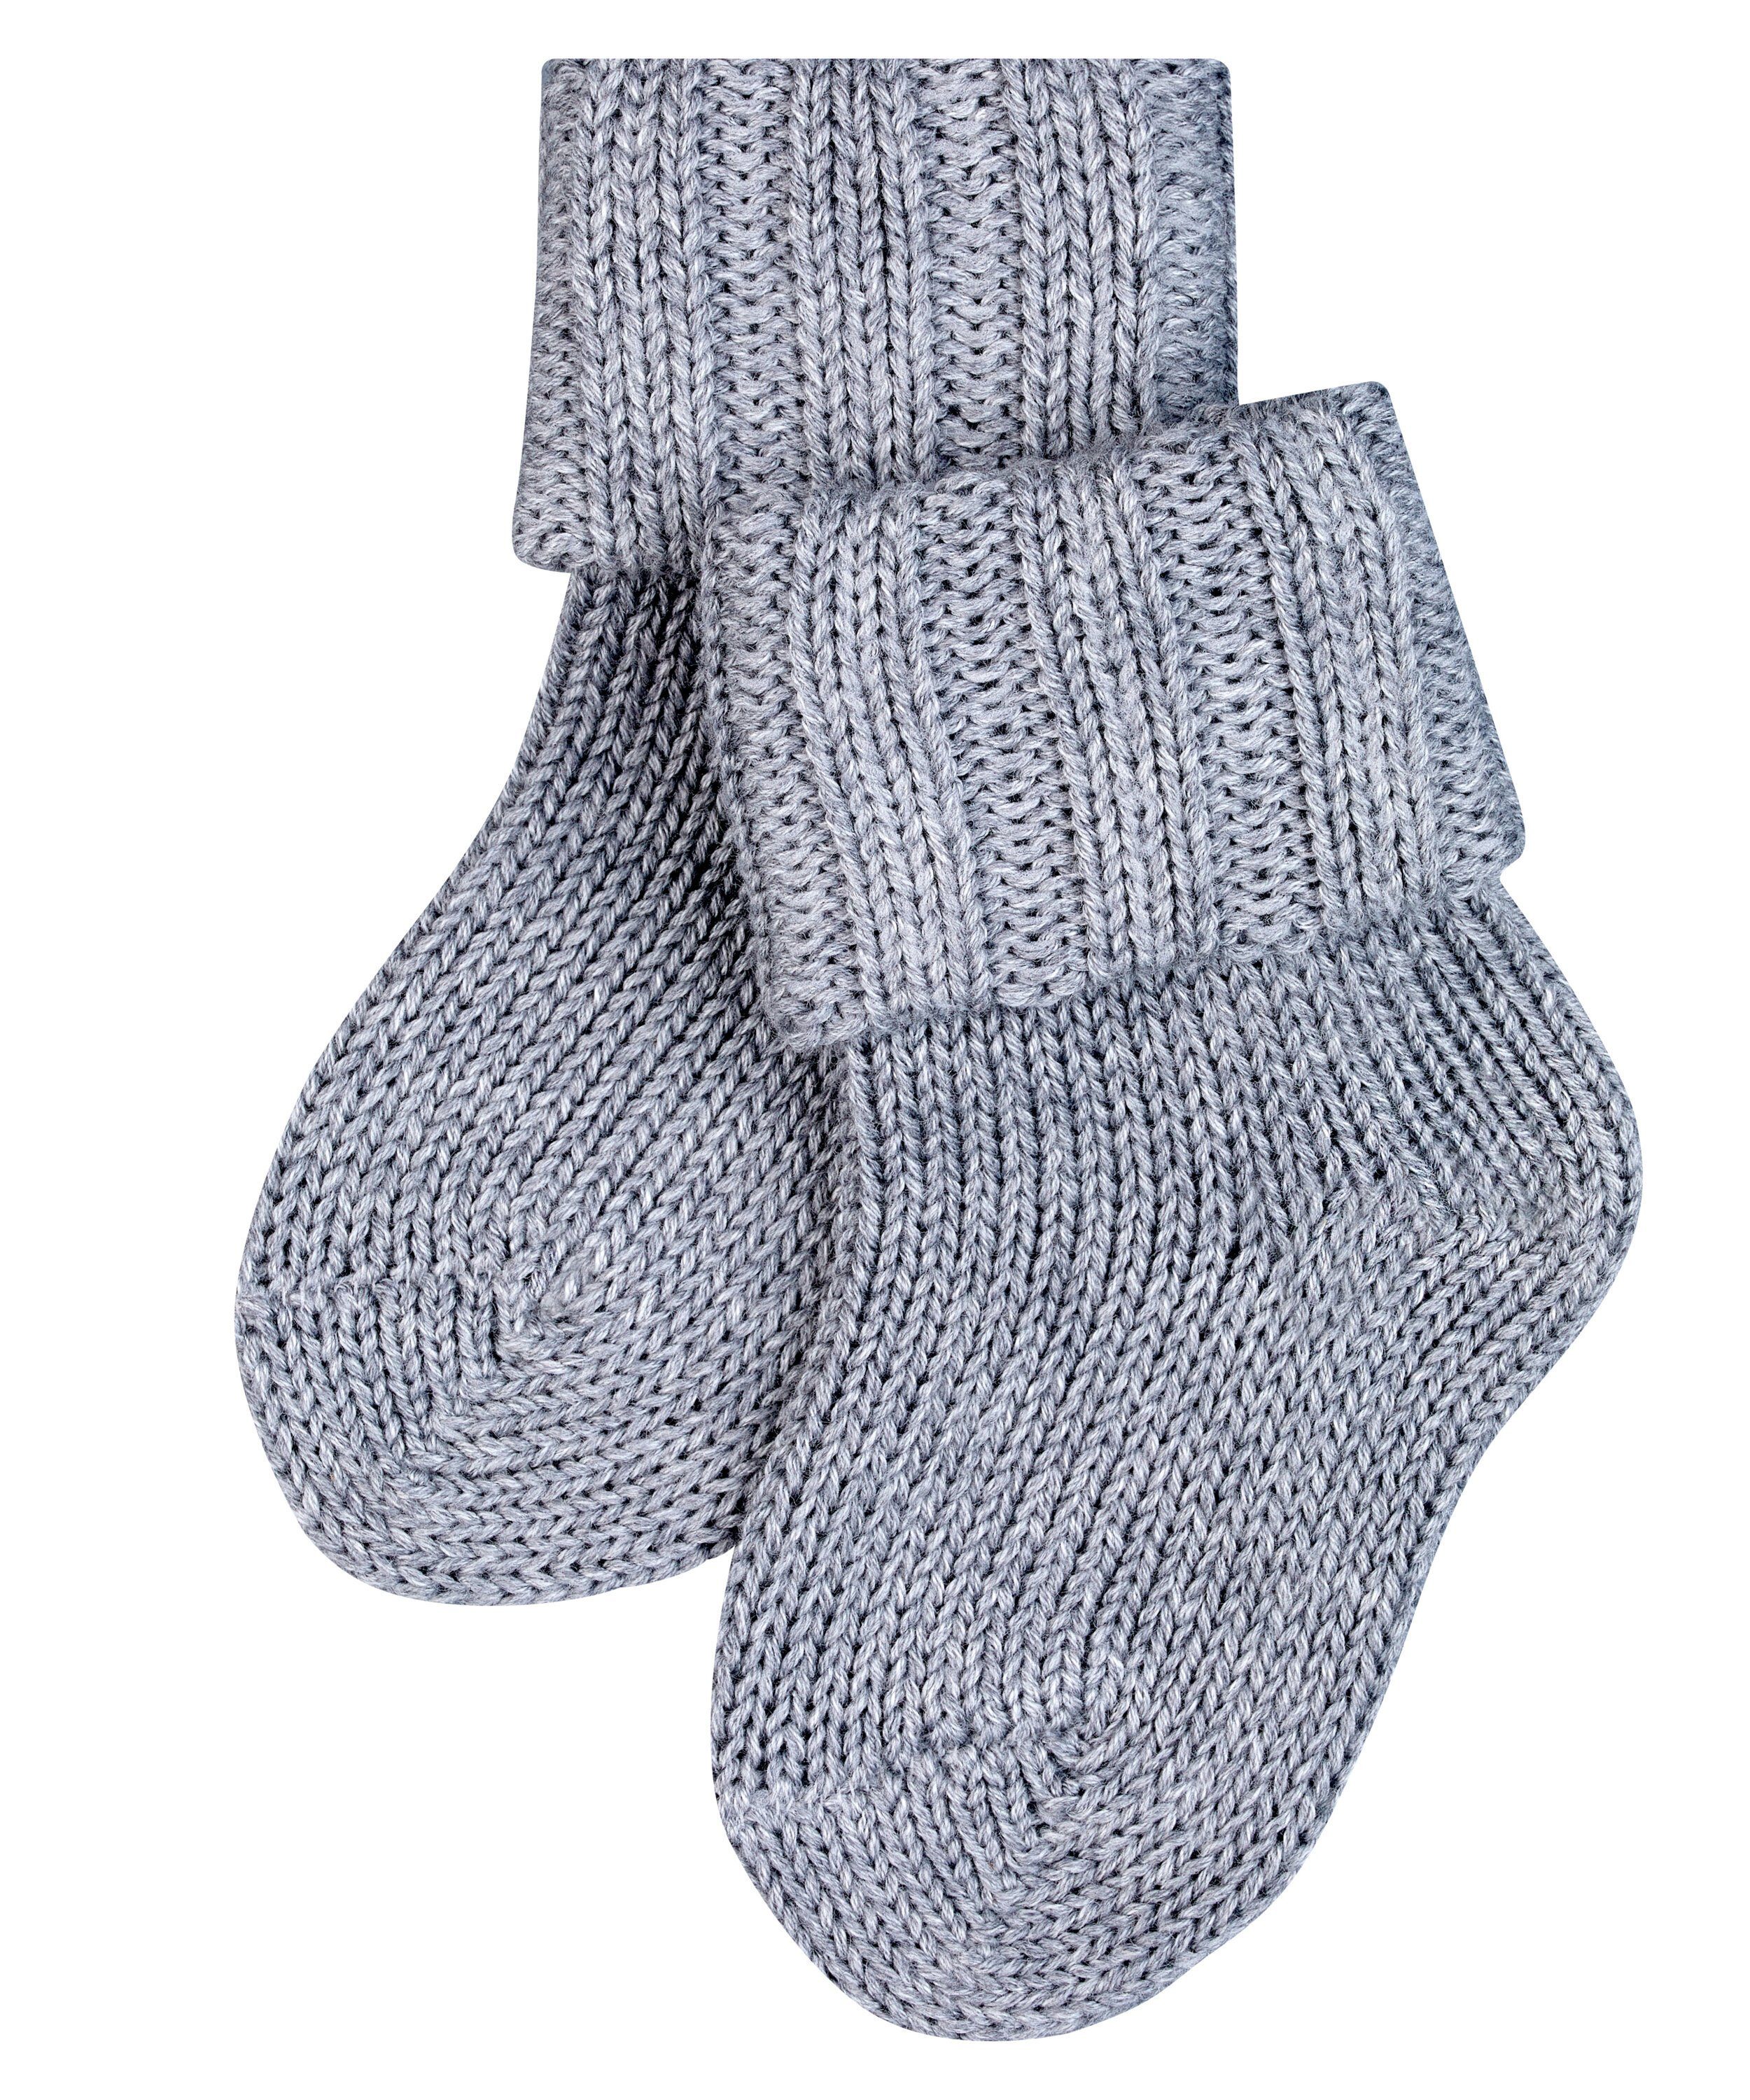 FALKE Socken Flausch (1-Paar) light (3400) grey